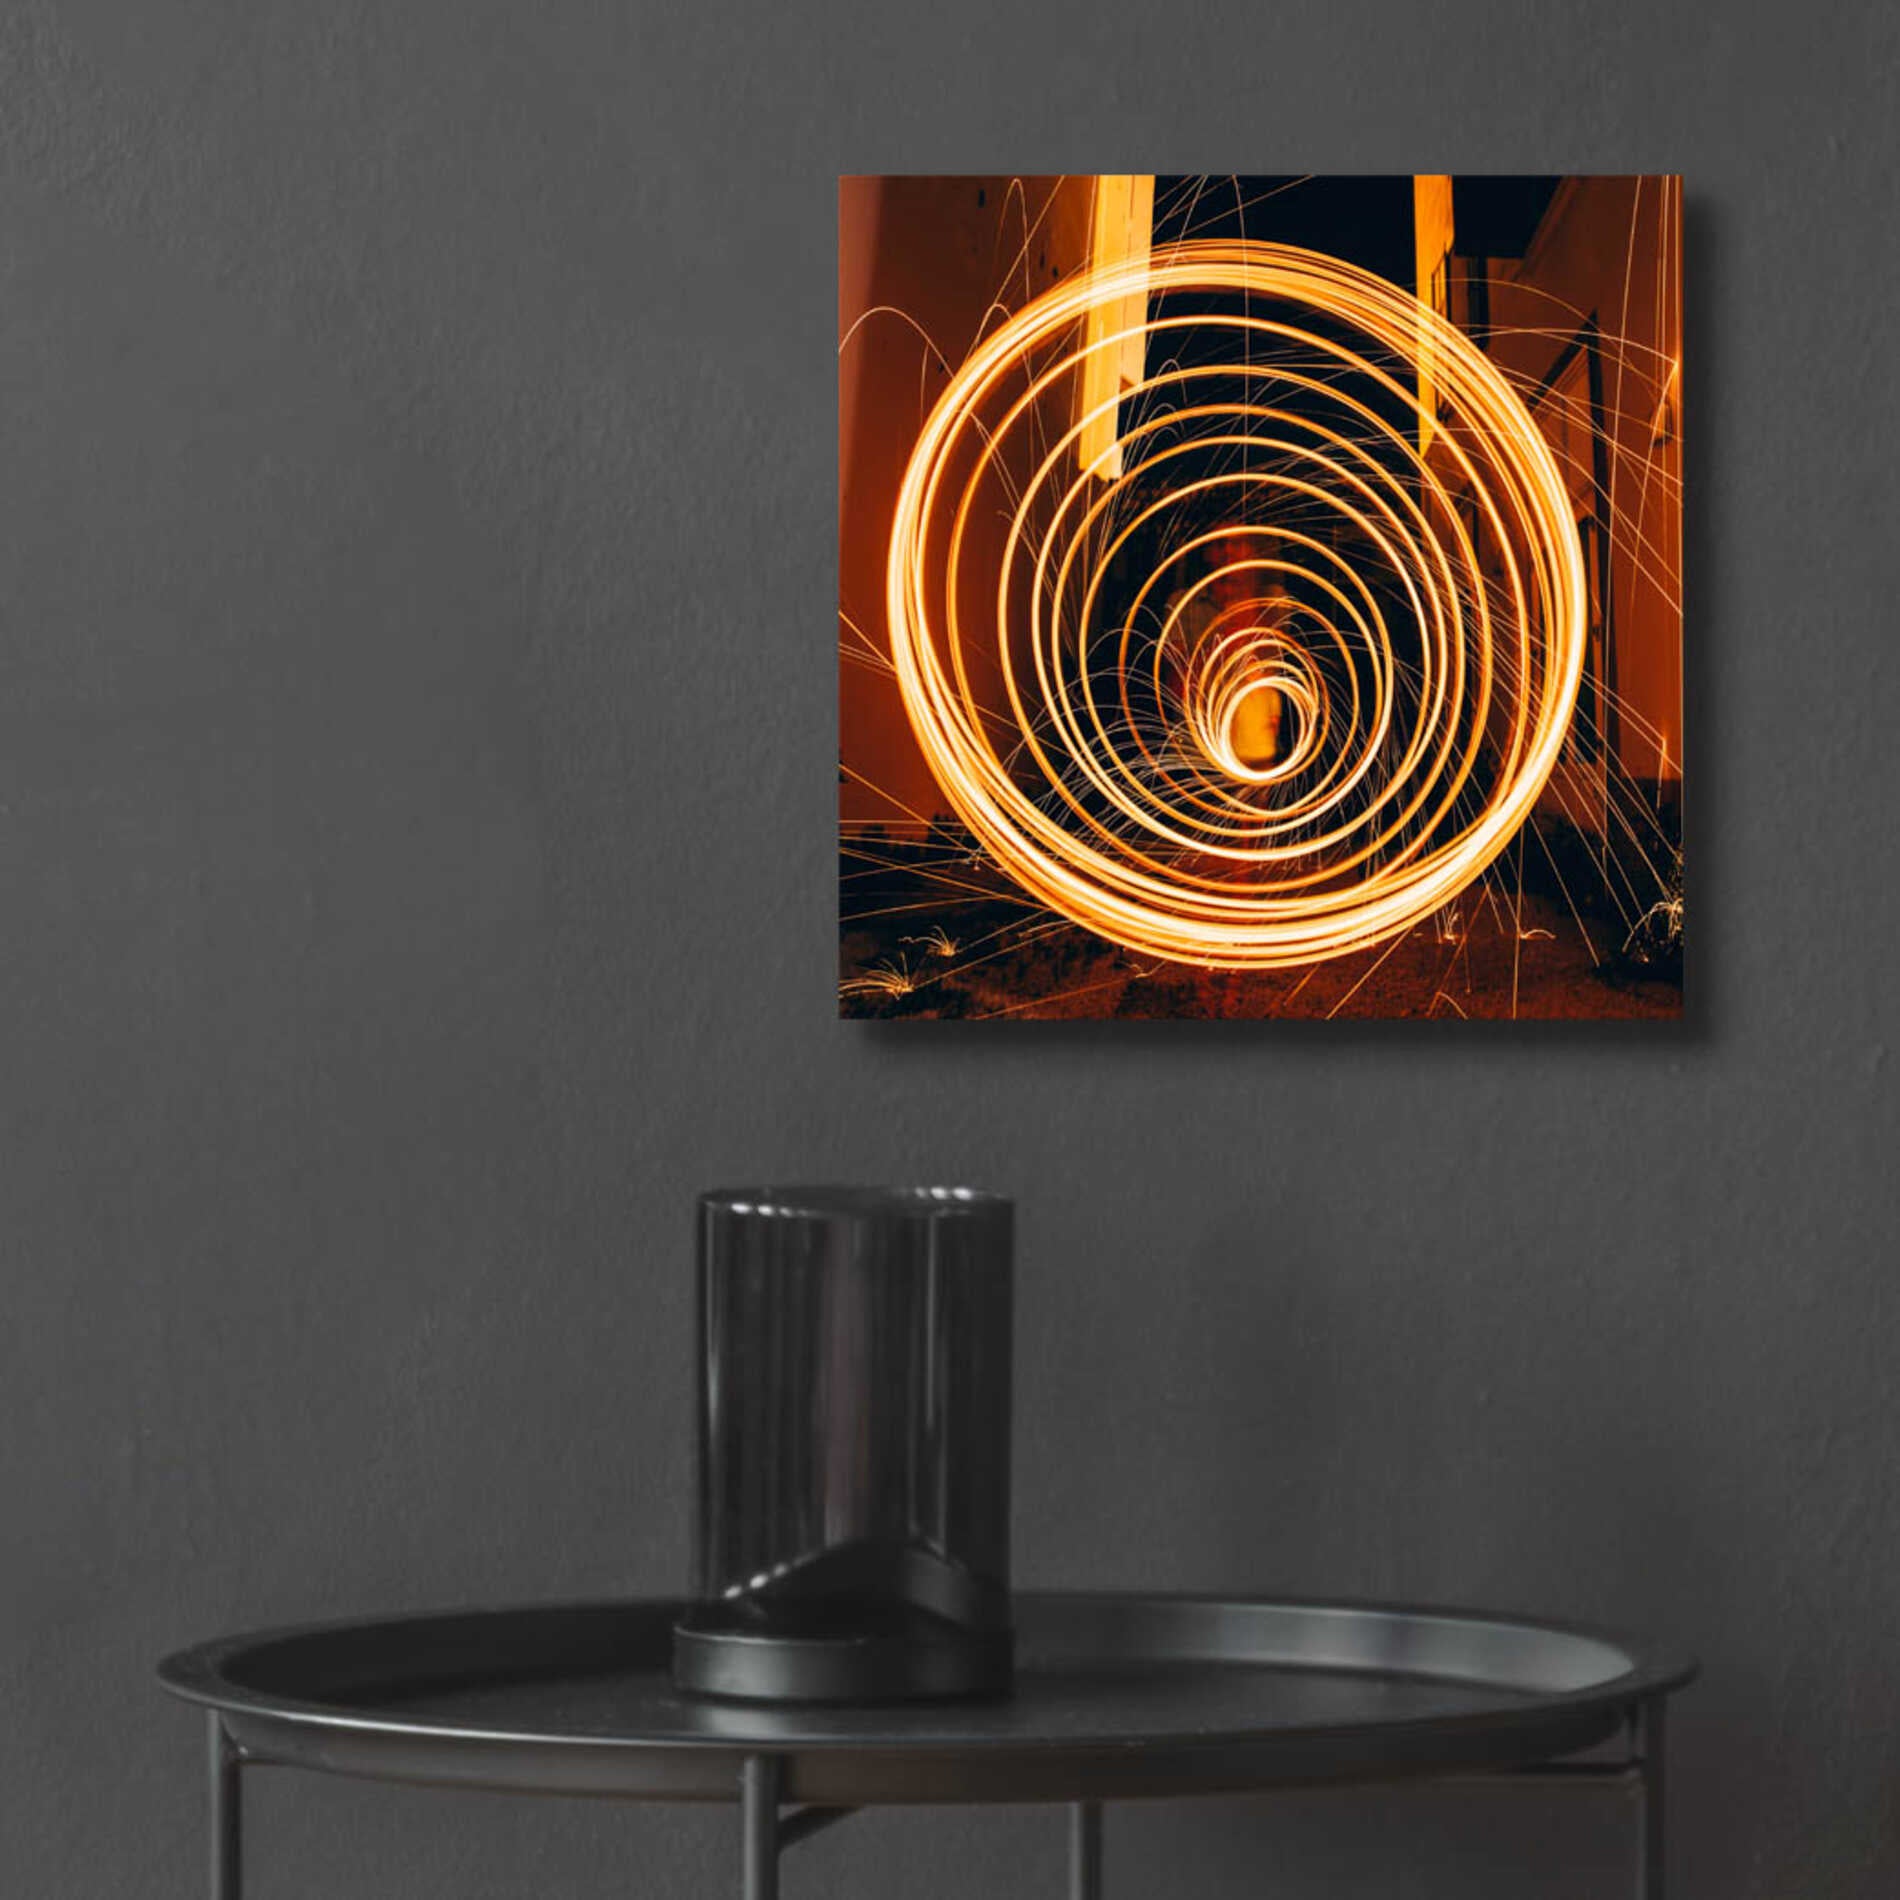 Epic Art 'Fiery Vortex' by Epic Portfolio Acrylic Glass Wall Art,12x12